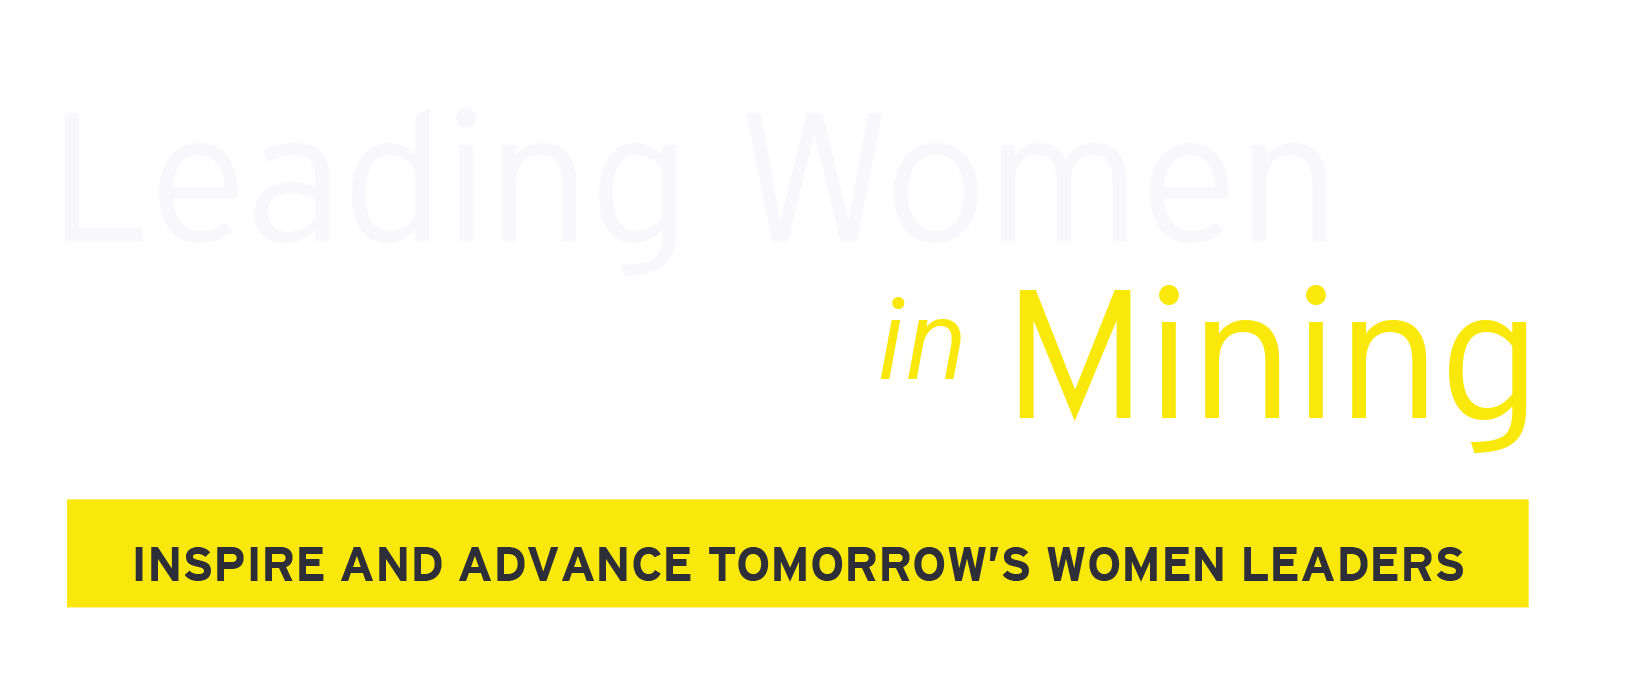 EY - Leading Women in Mining